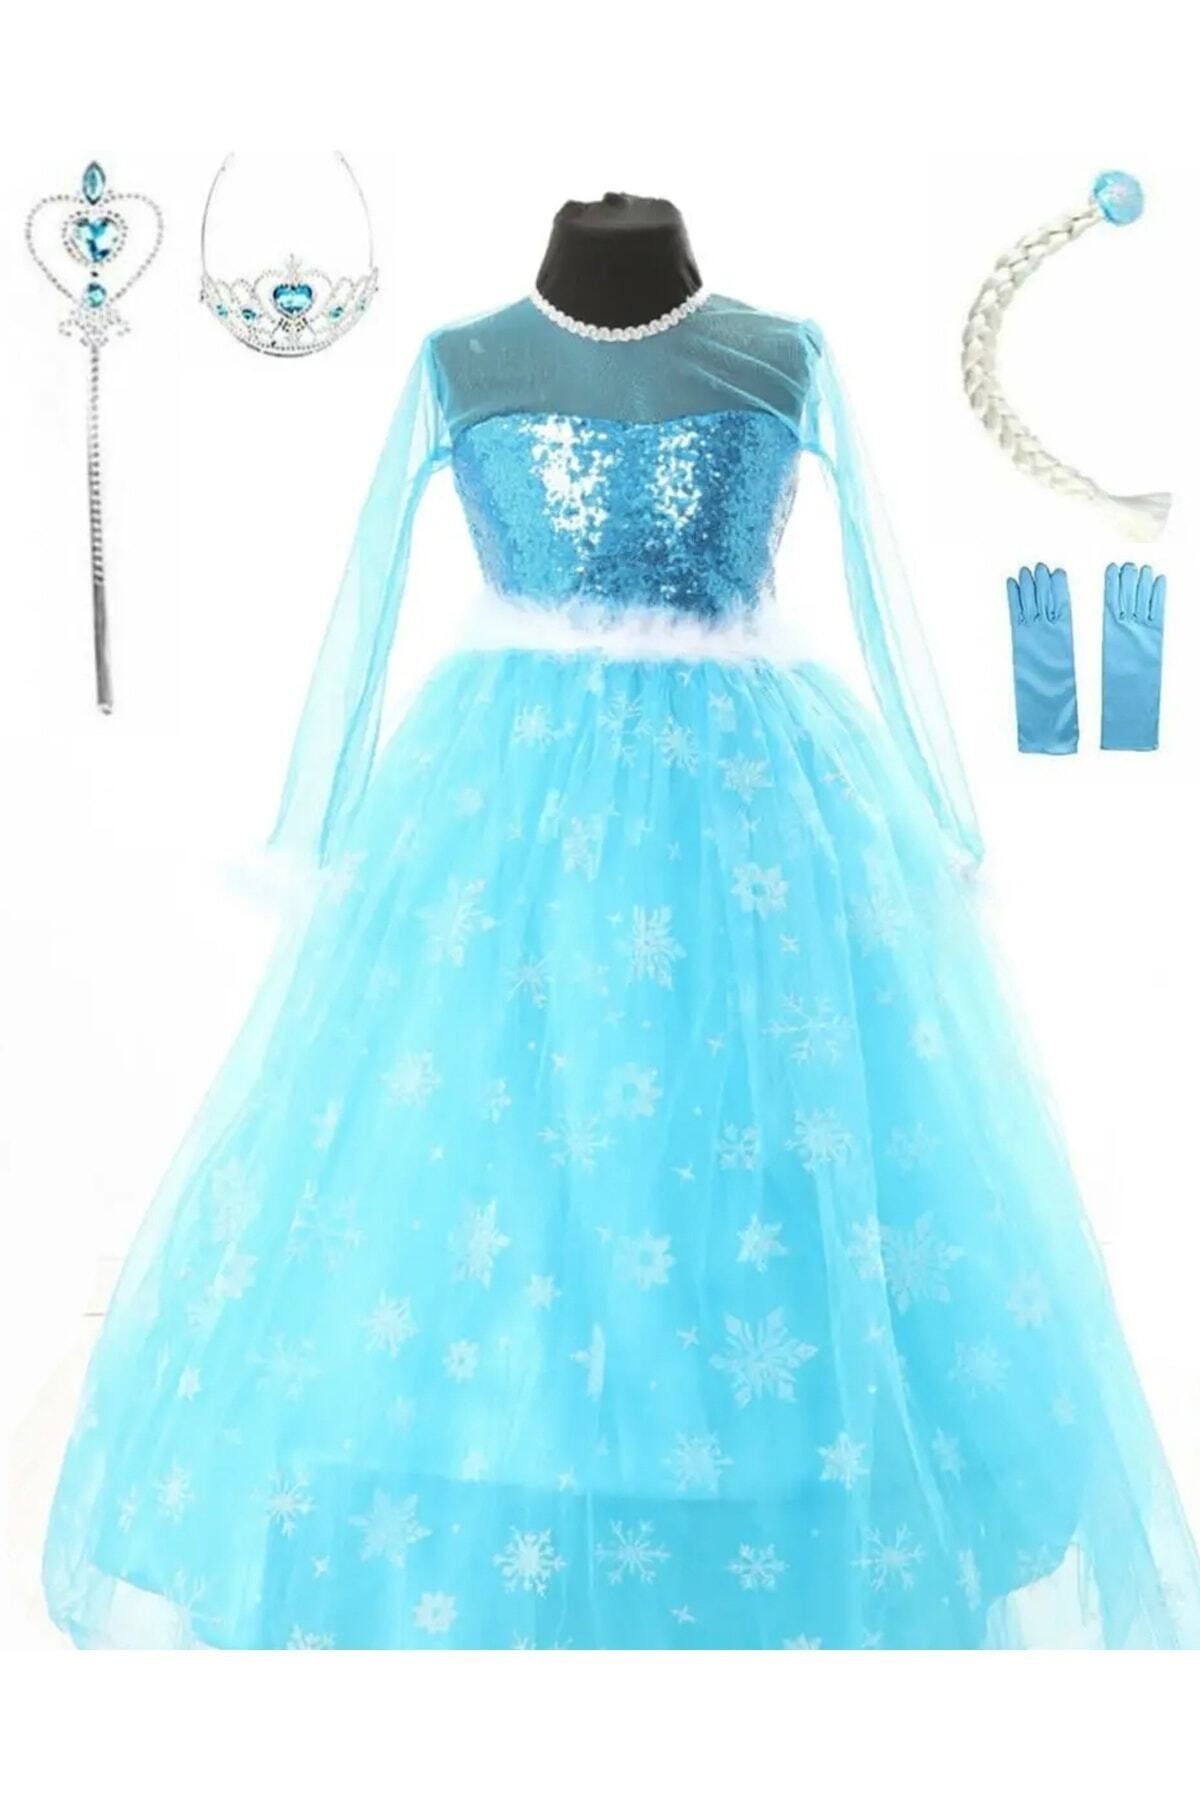 DEHAMODA Kız Çocuk Mavi Uzun Kol Tarlatanlı Elsa Elbise Karlar Kraliçesi 23 Nisan